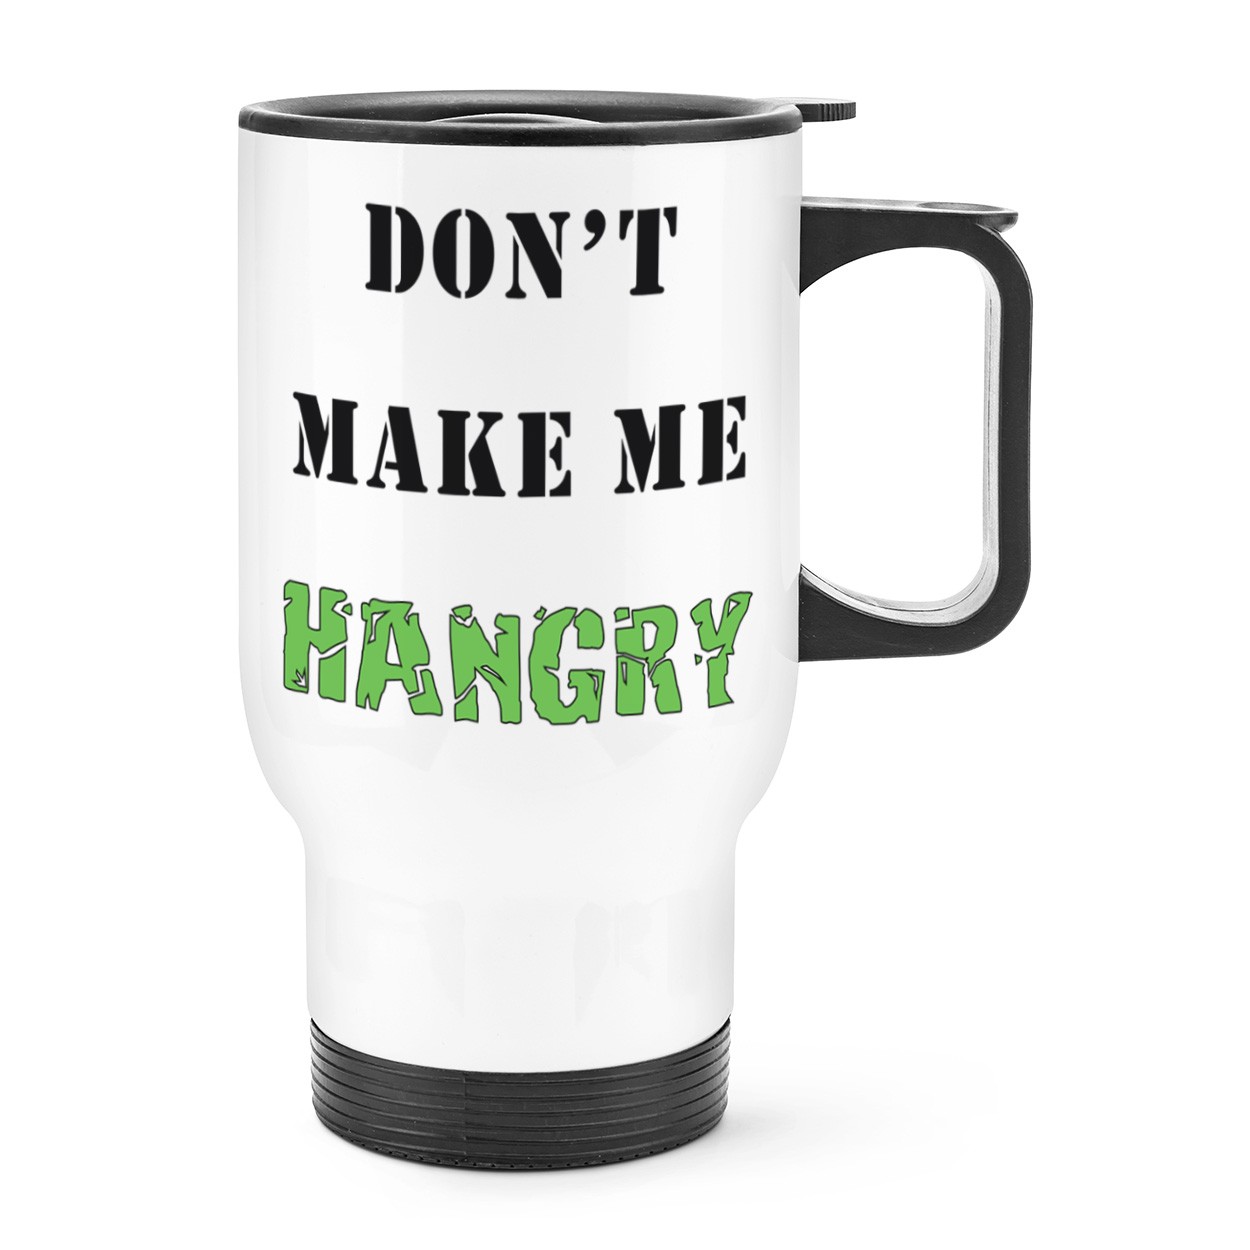 Don't Make Me Hangry Travel Mug Cup With Handle